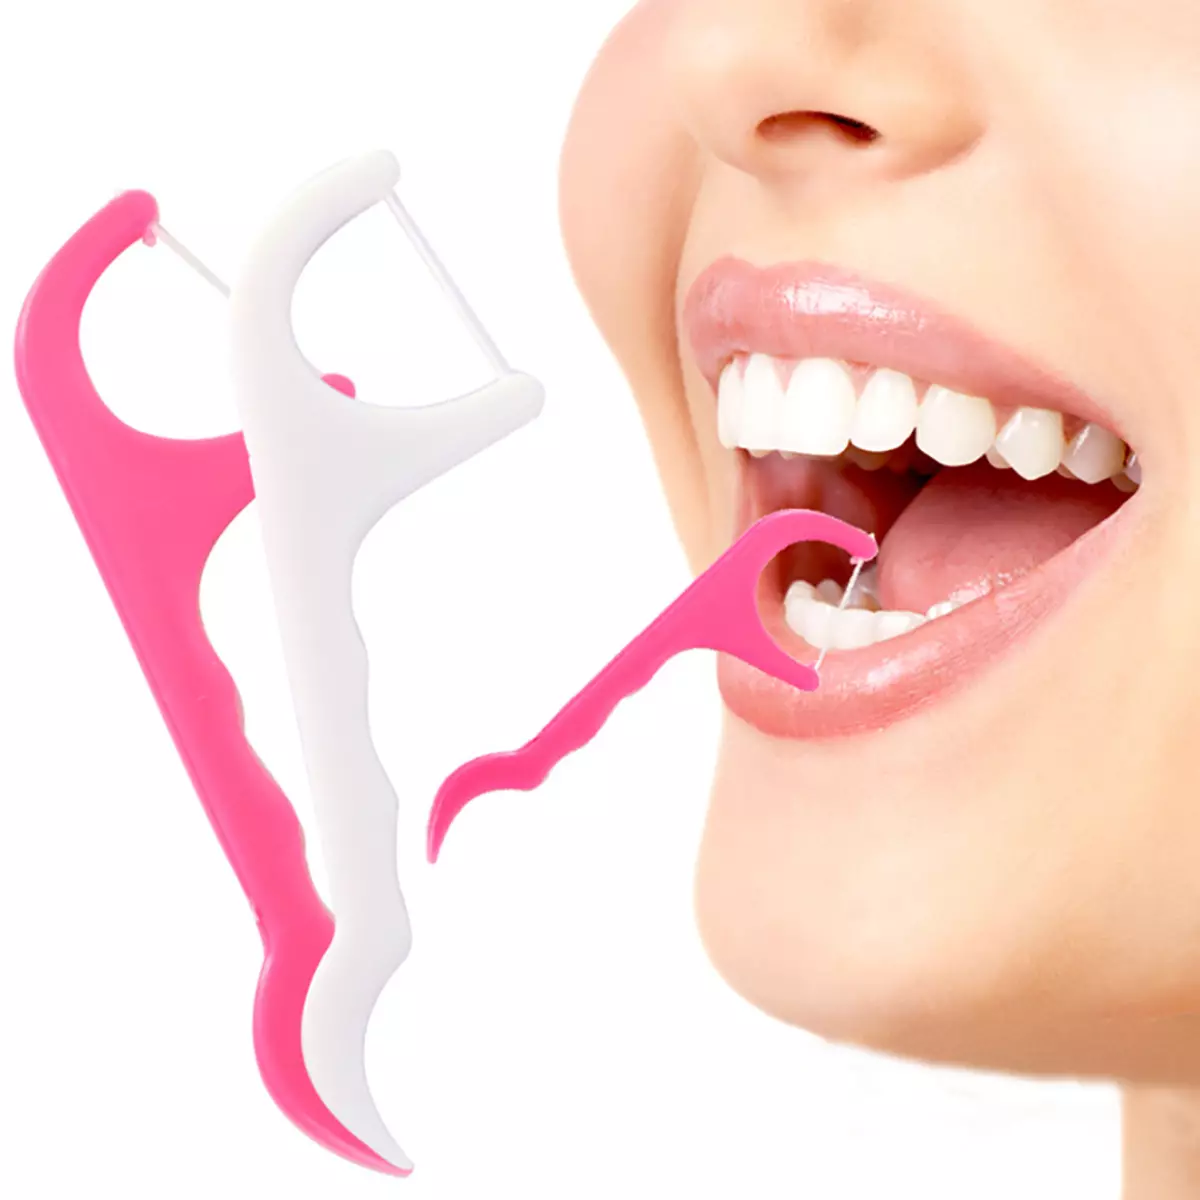 Tăm đánh răng với chủ đề: Làm thế nào để chọn một chỉ nha khoa cho răng? Làm thế nào để sử dụng một chủ đề nha khoa trên cây đũa phép bằng nhựa? 16188_20